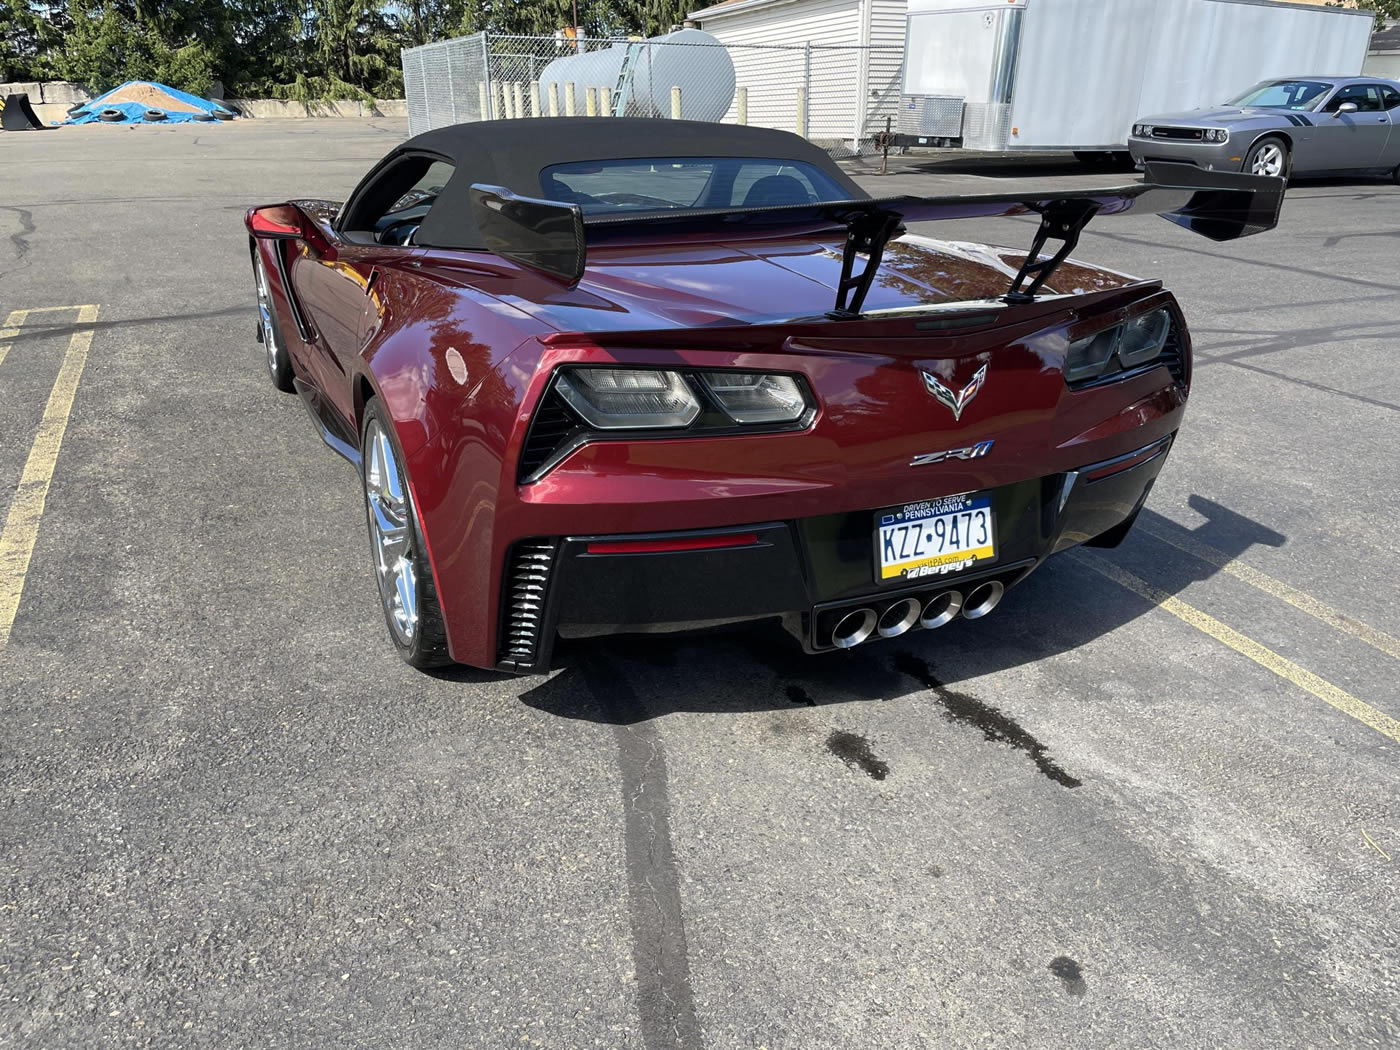 2019 Corvette ZR1 Convertible 3ZR ZTK in Long Beach Red Metallic